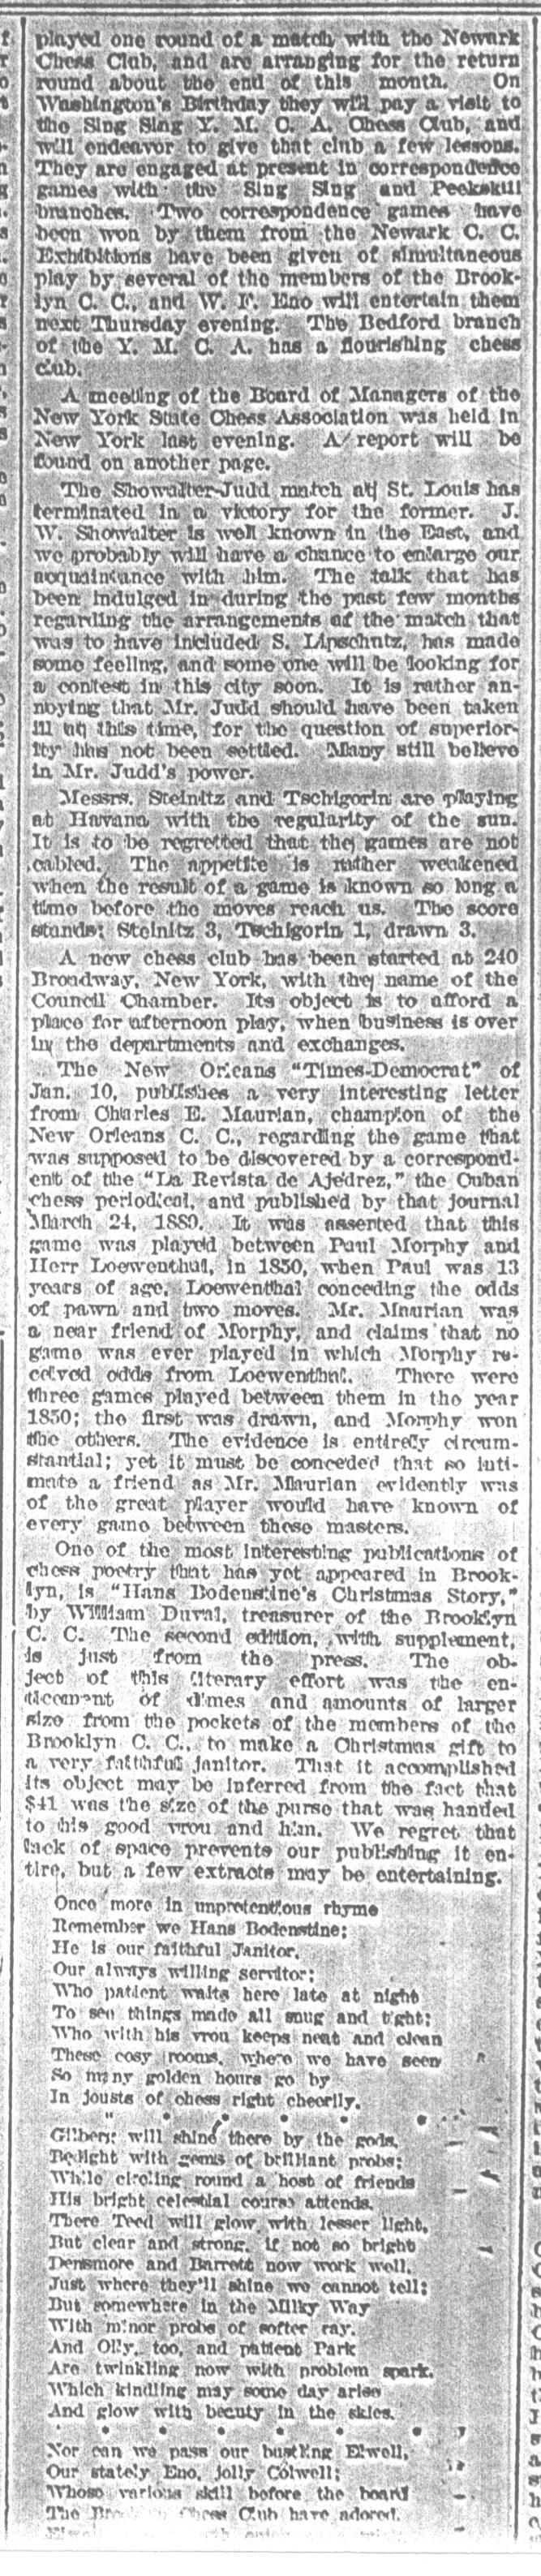 1892.01.16-03 Brooklyn Daily Standard-Union.jpg